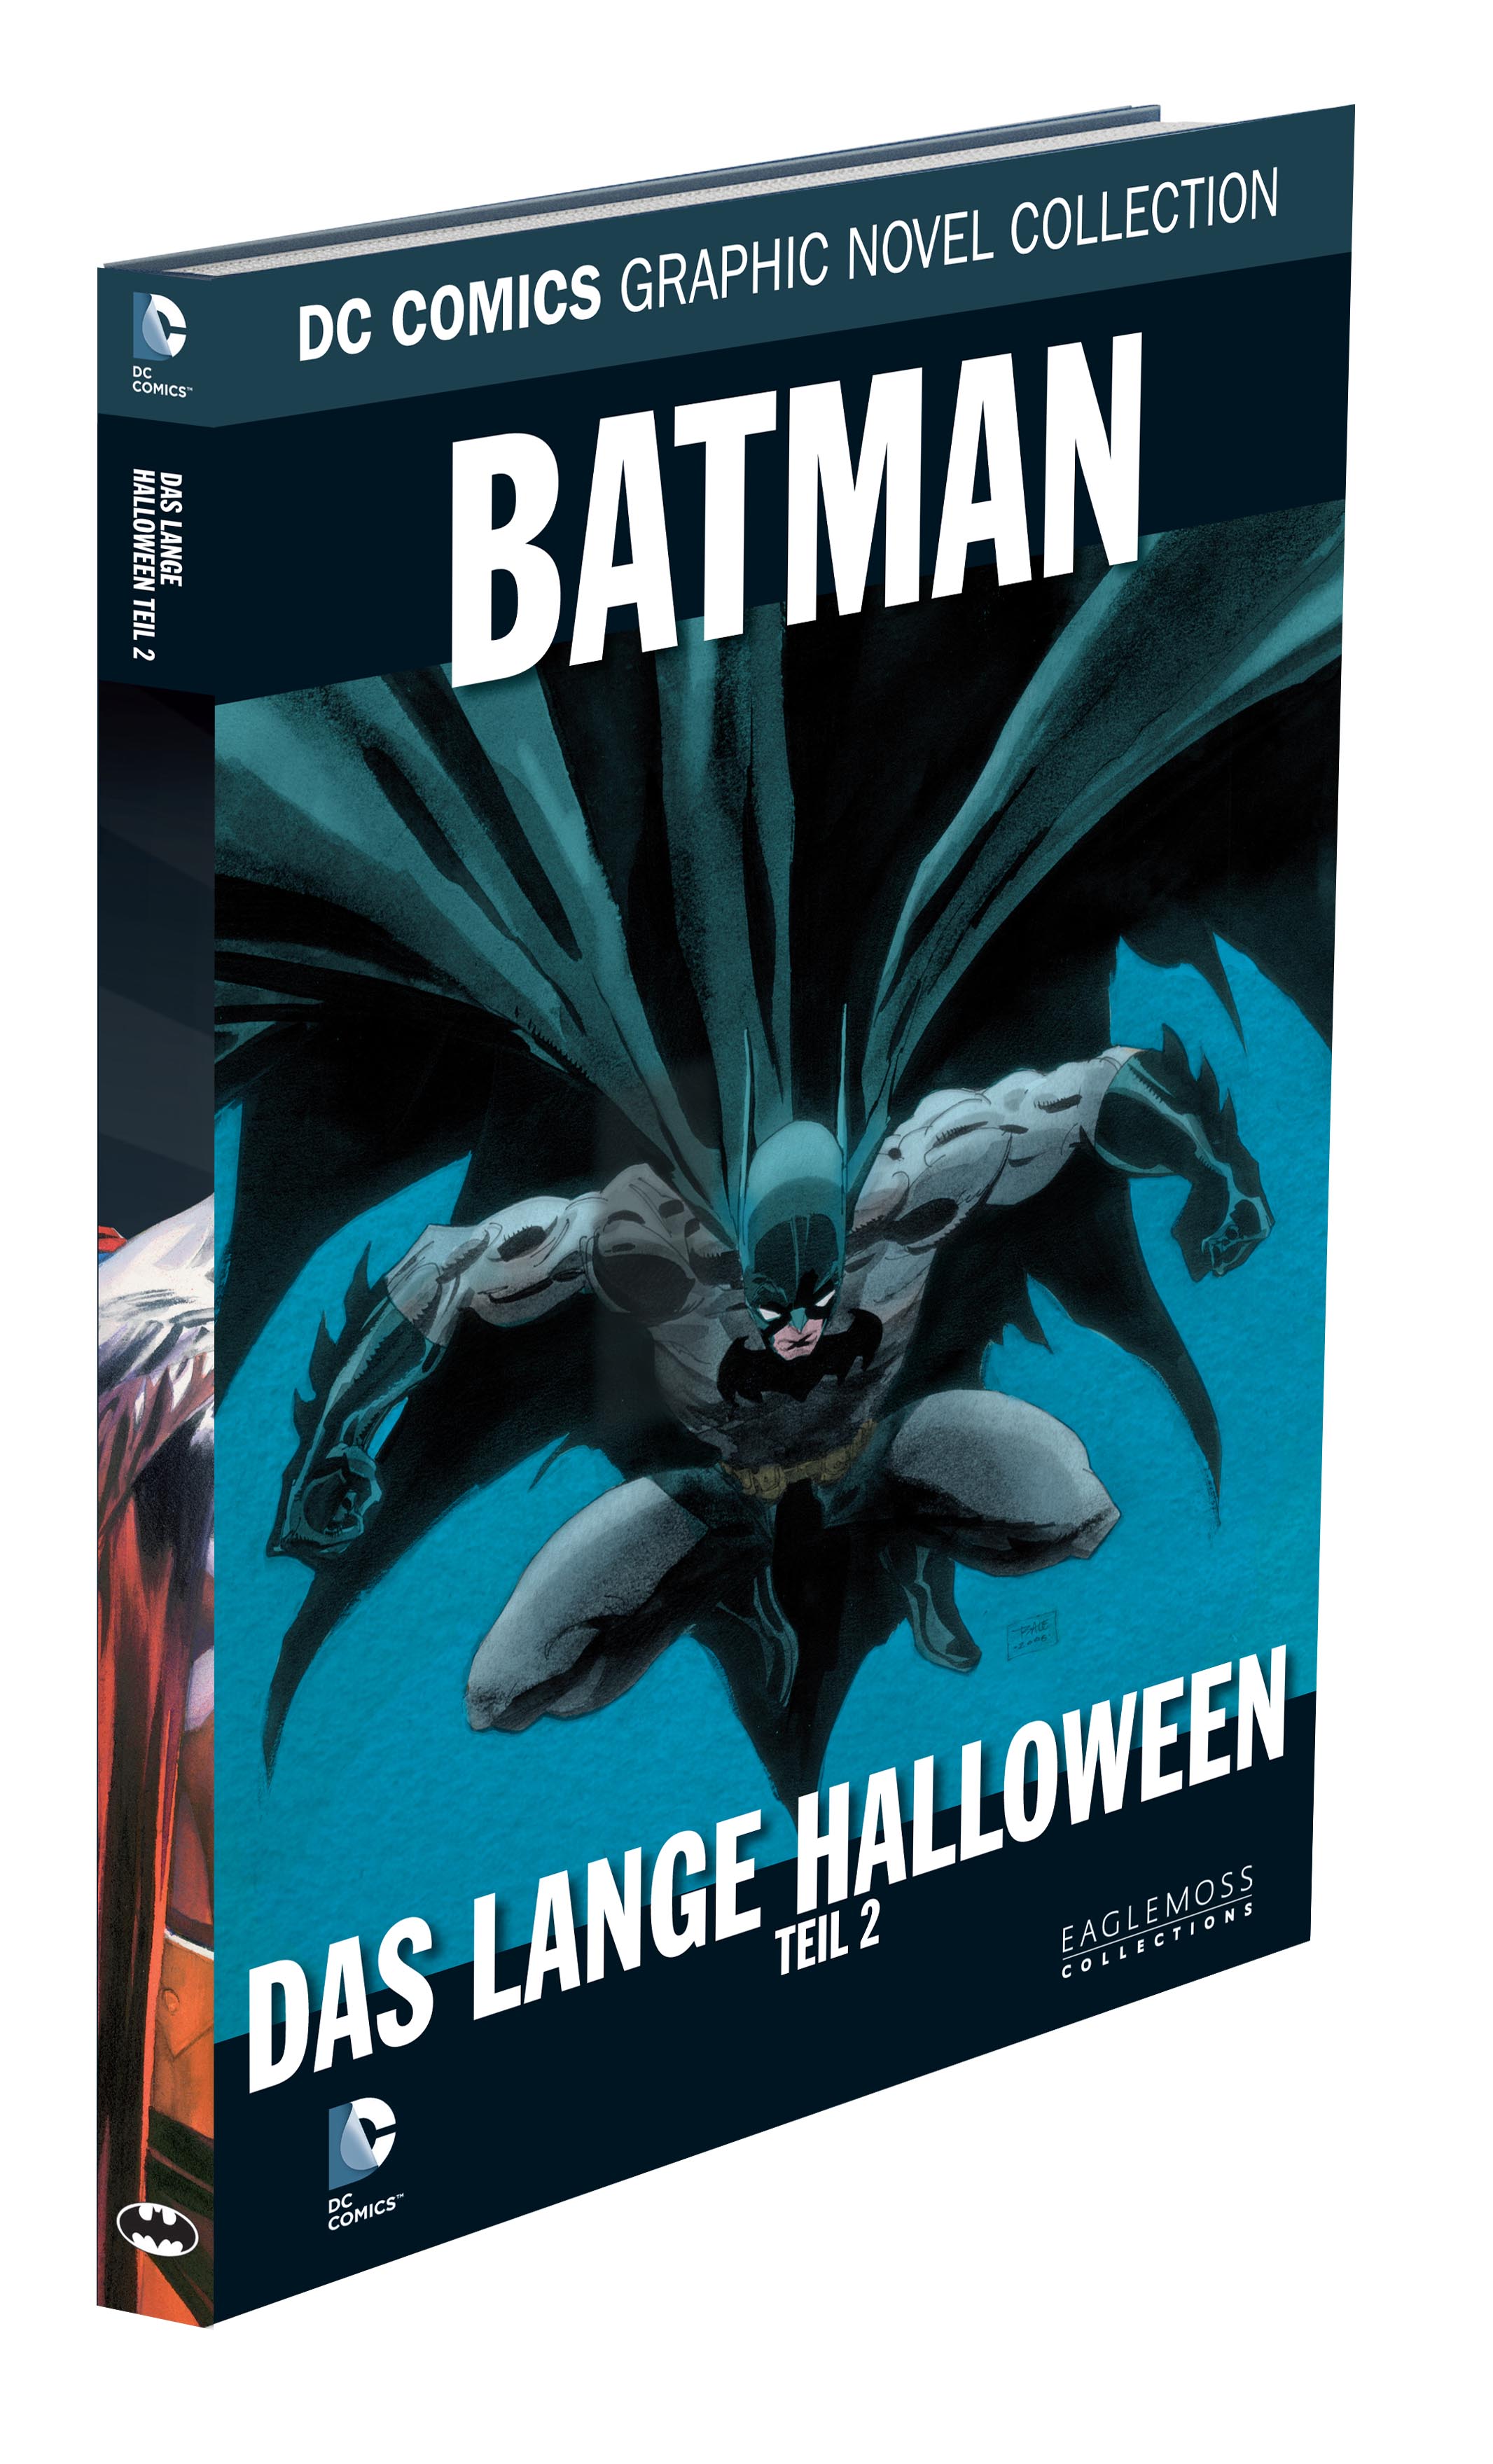 DC Comics Graphic Novel Collection Batman - Das lange Halloween Teil 2